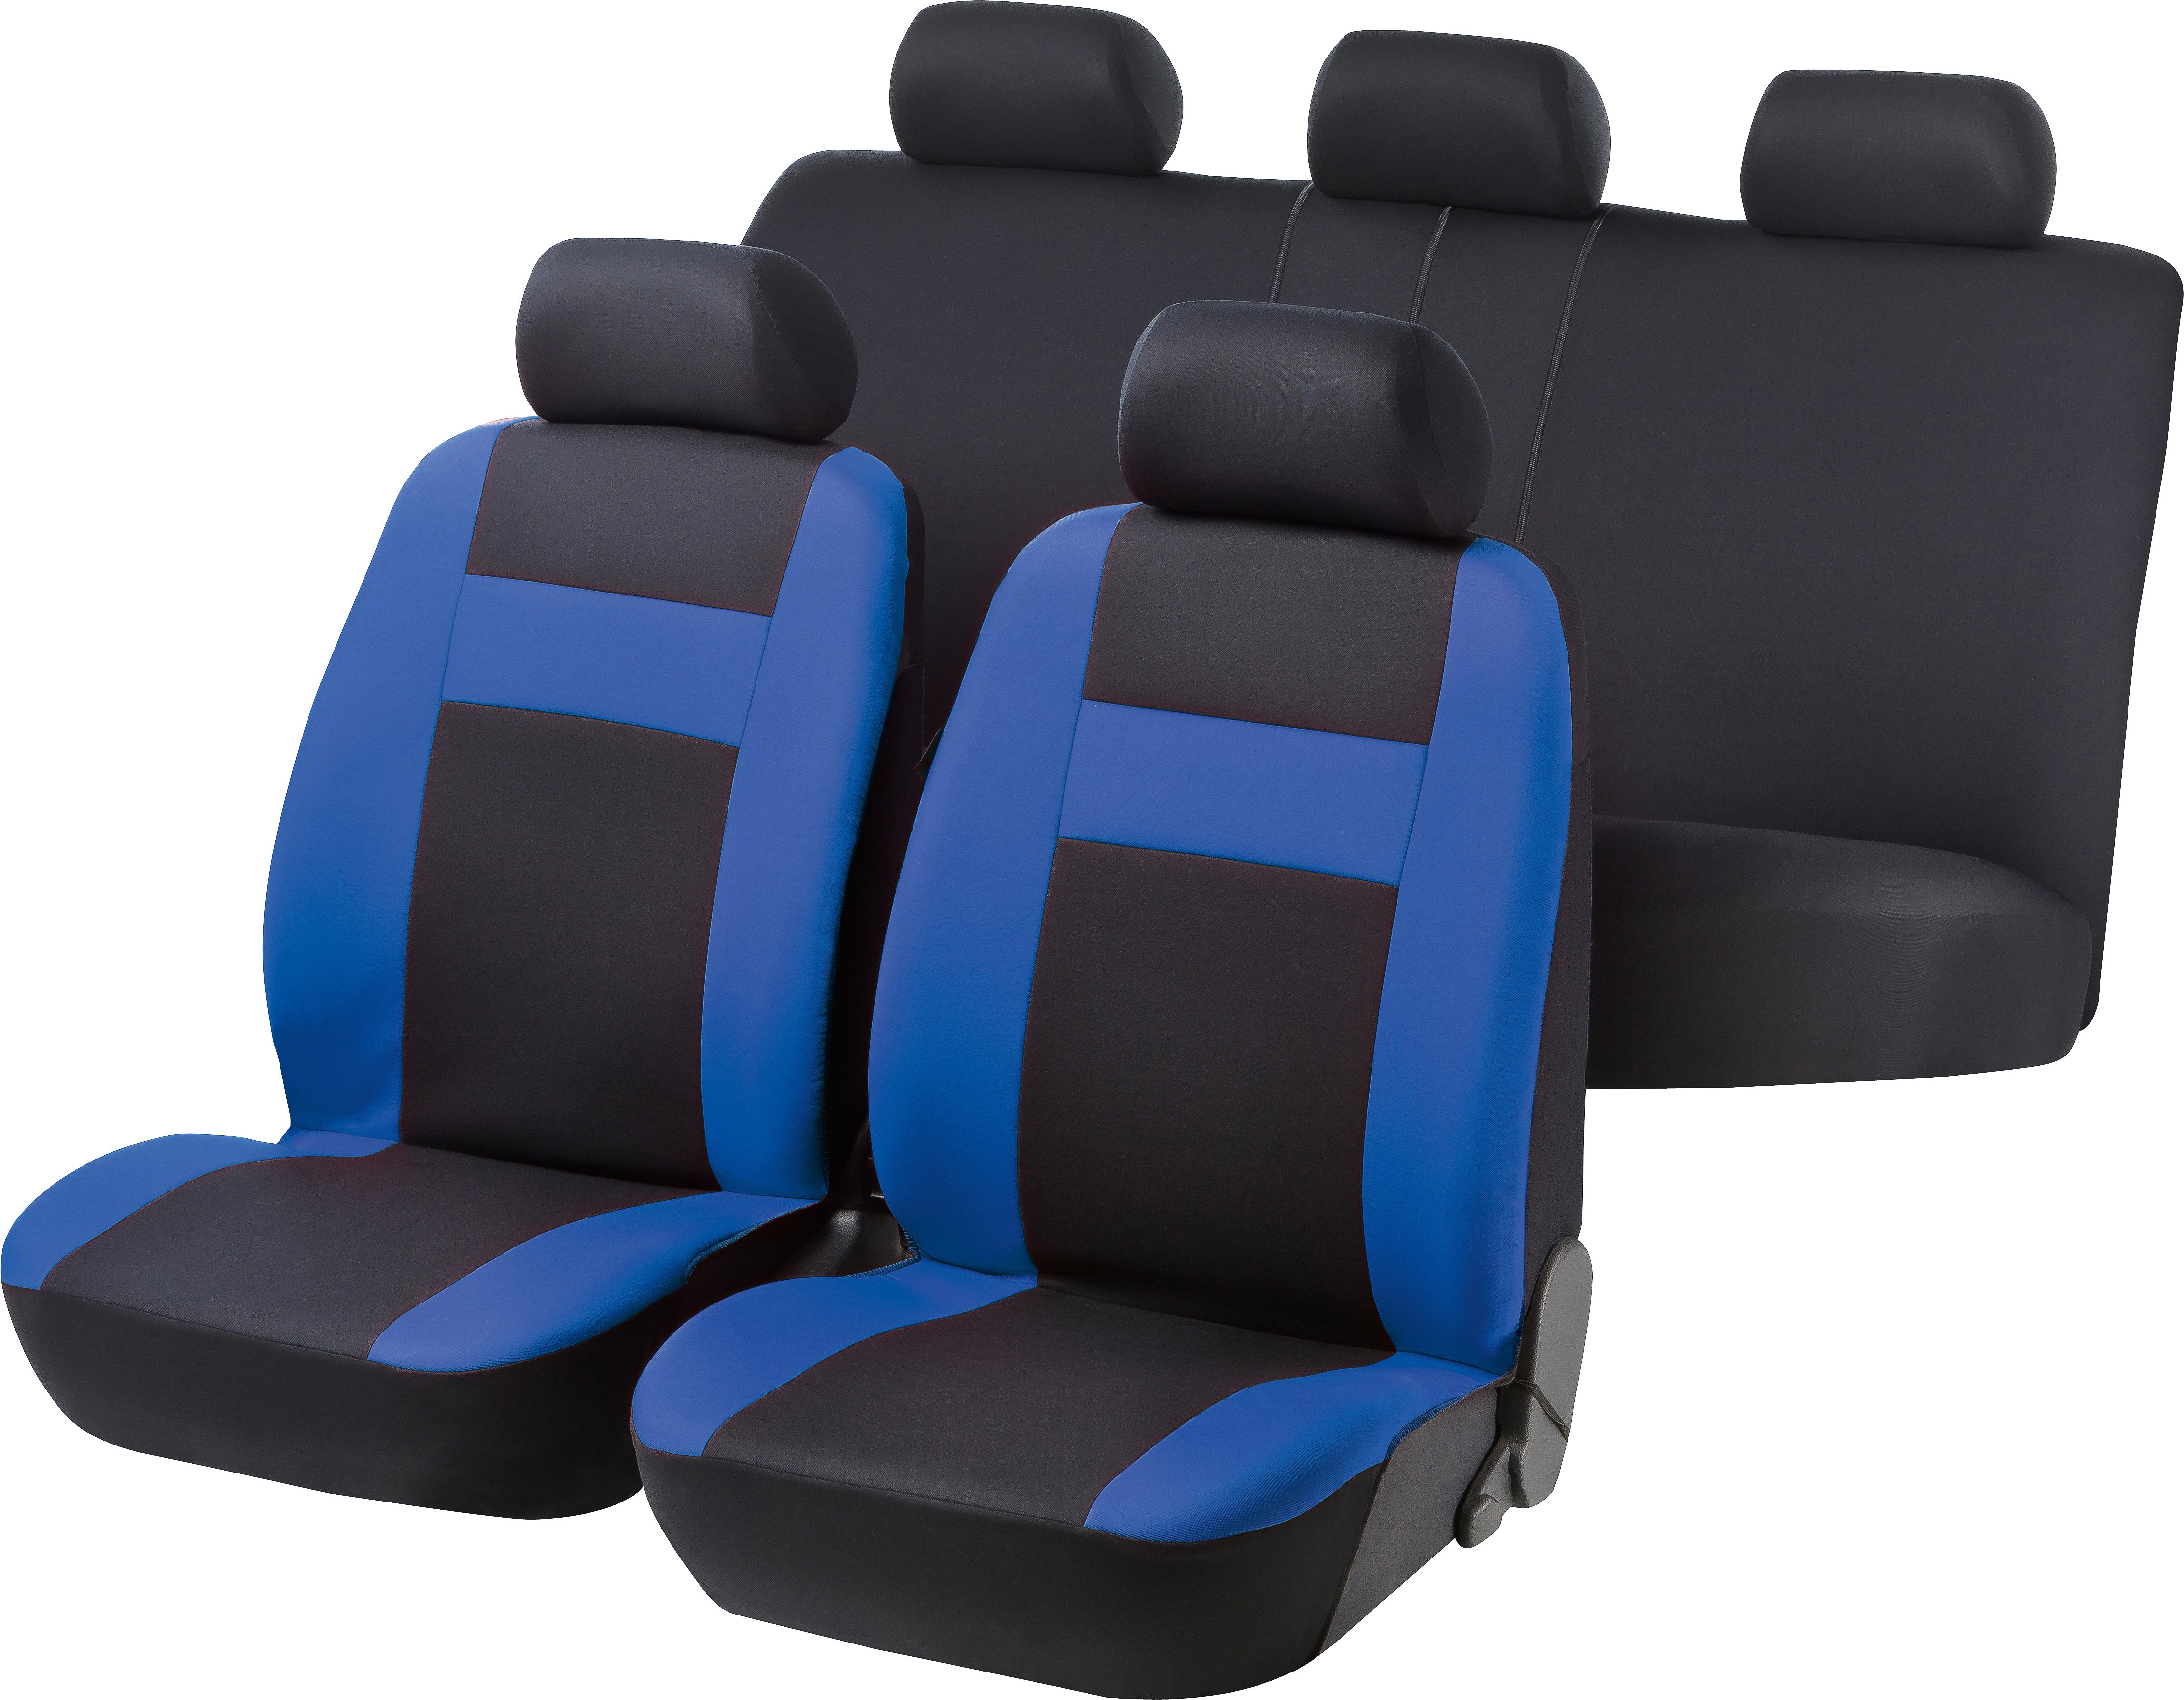 OBI Sitzbezug Komplett-Set Cruise Schwarz-Blau kaufen bei OBI